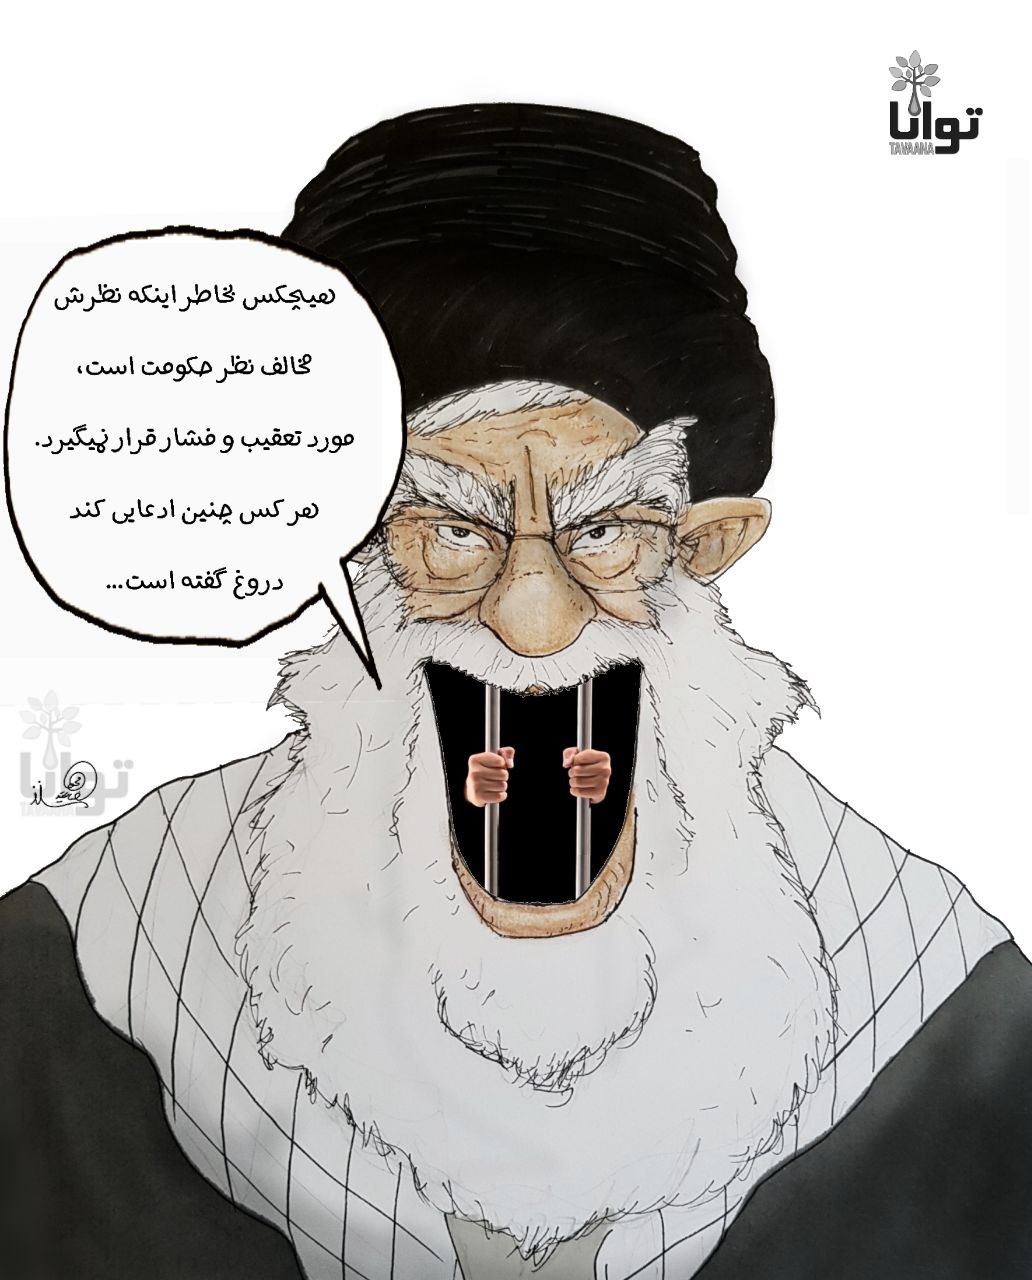 KhameneiLie